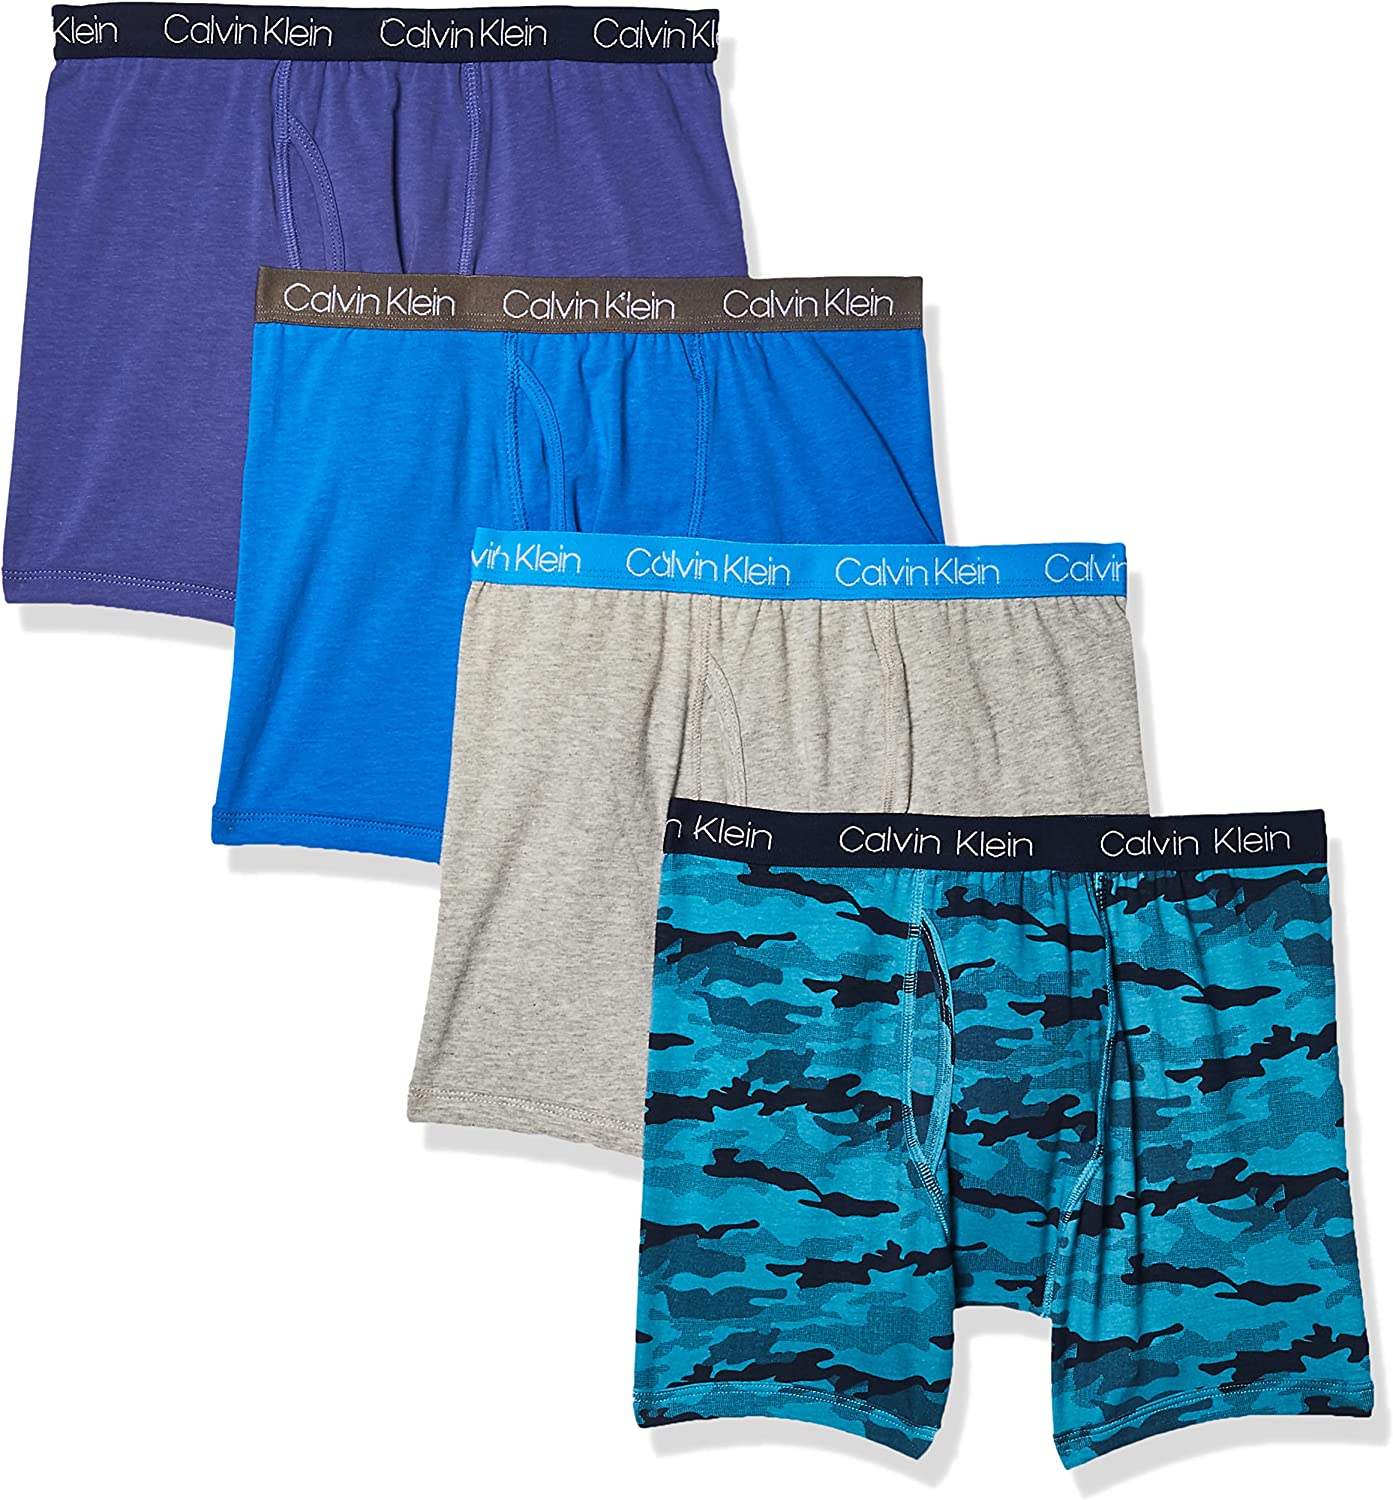 Calvin Klein Boys Underwear 4 Pack Boxer Briefs - Marlin/Heather Grey/Camo/French Blue